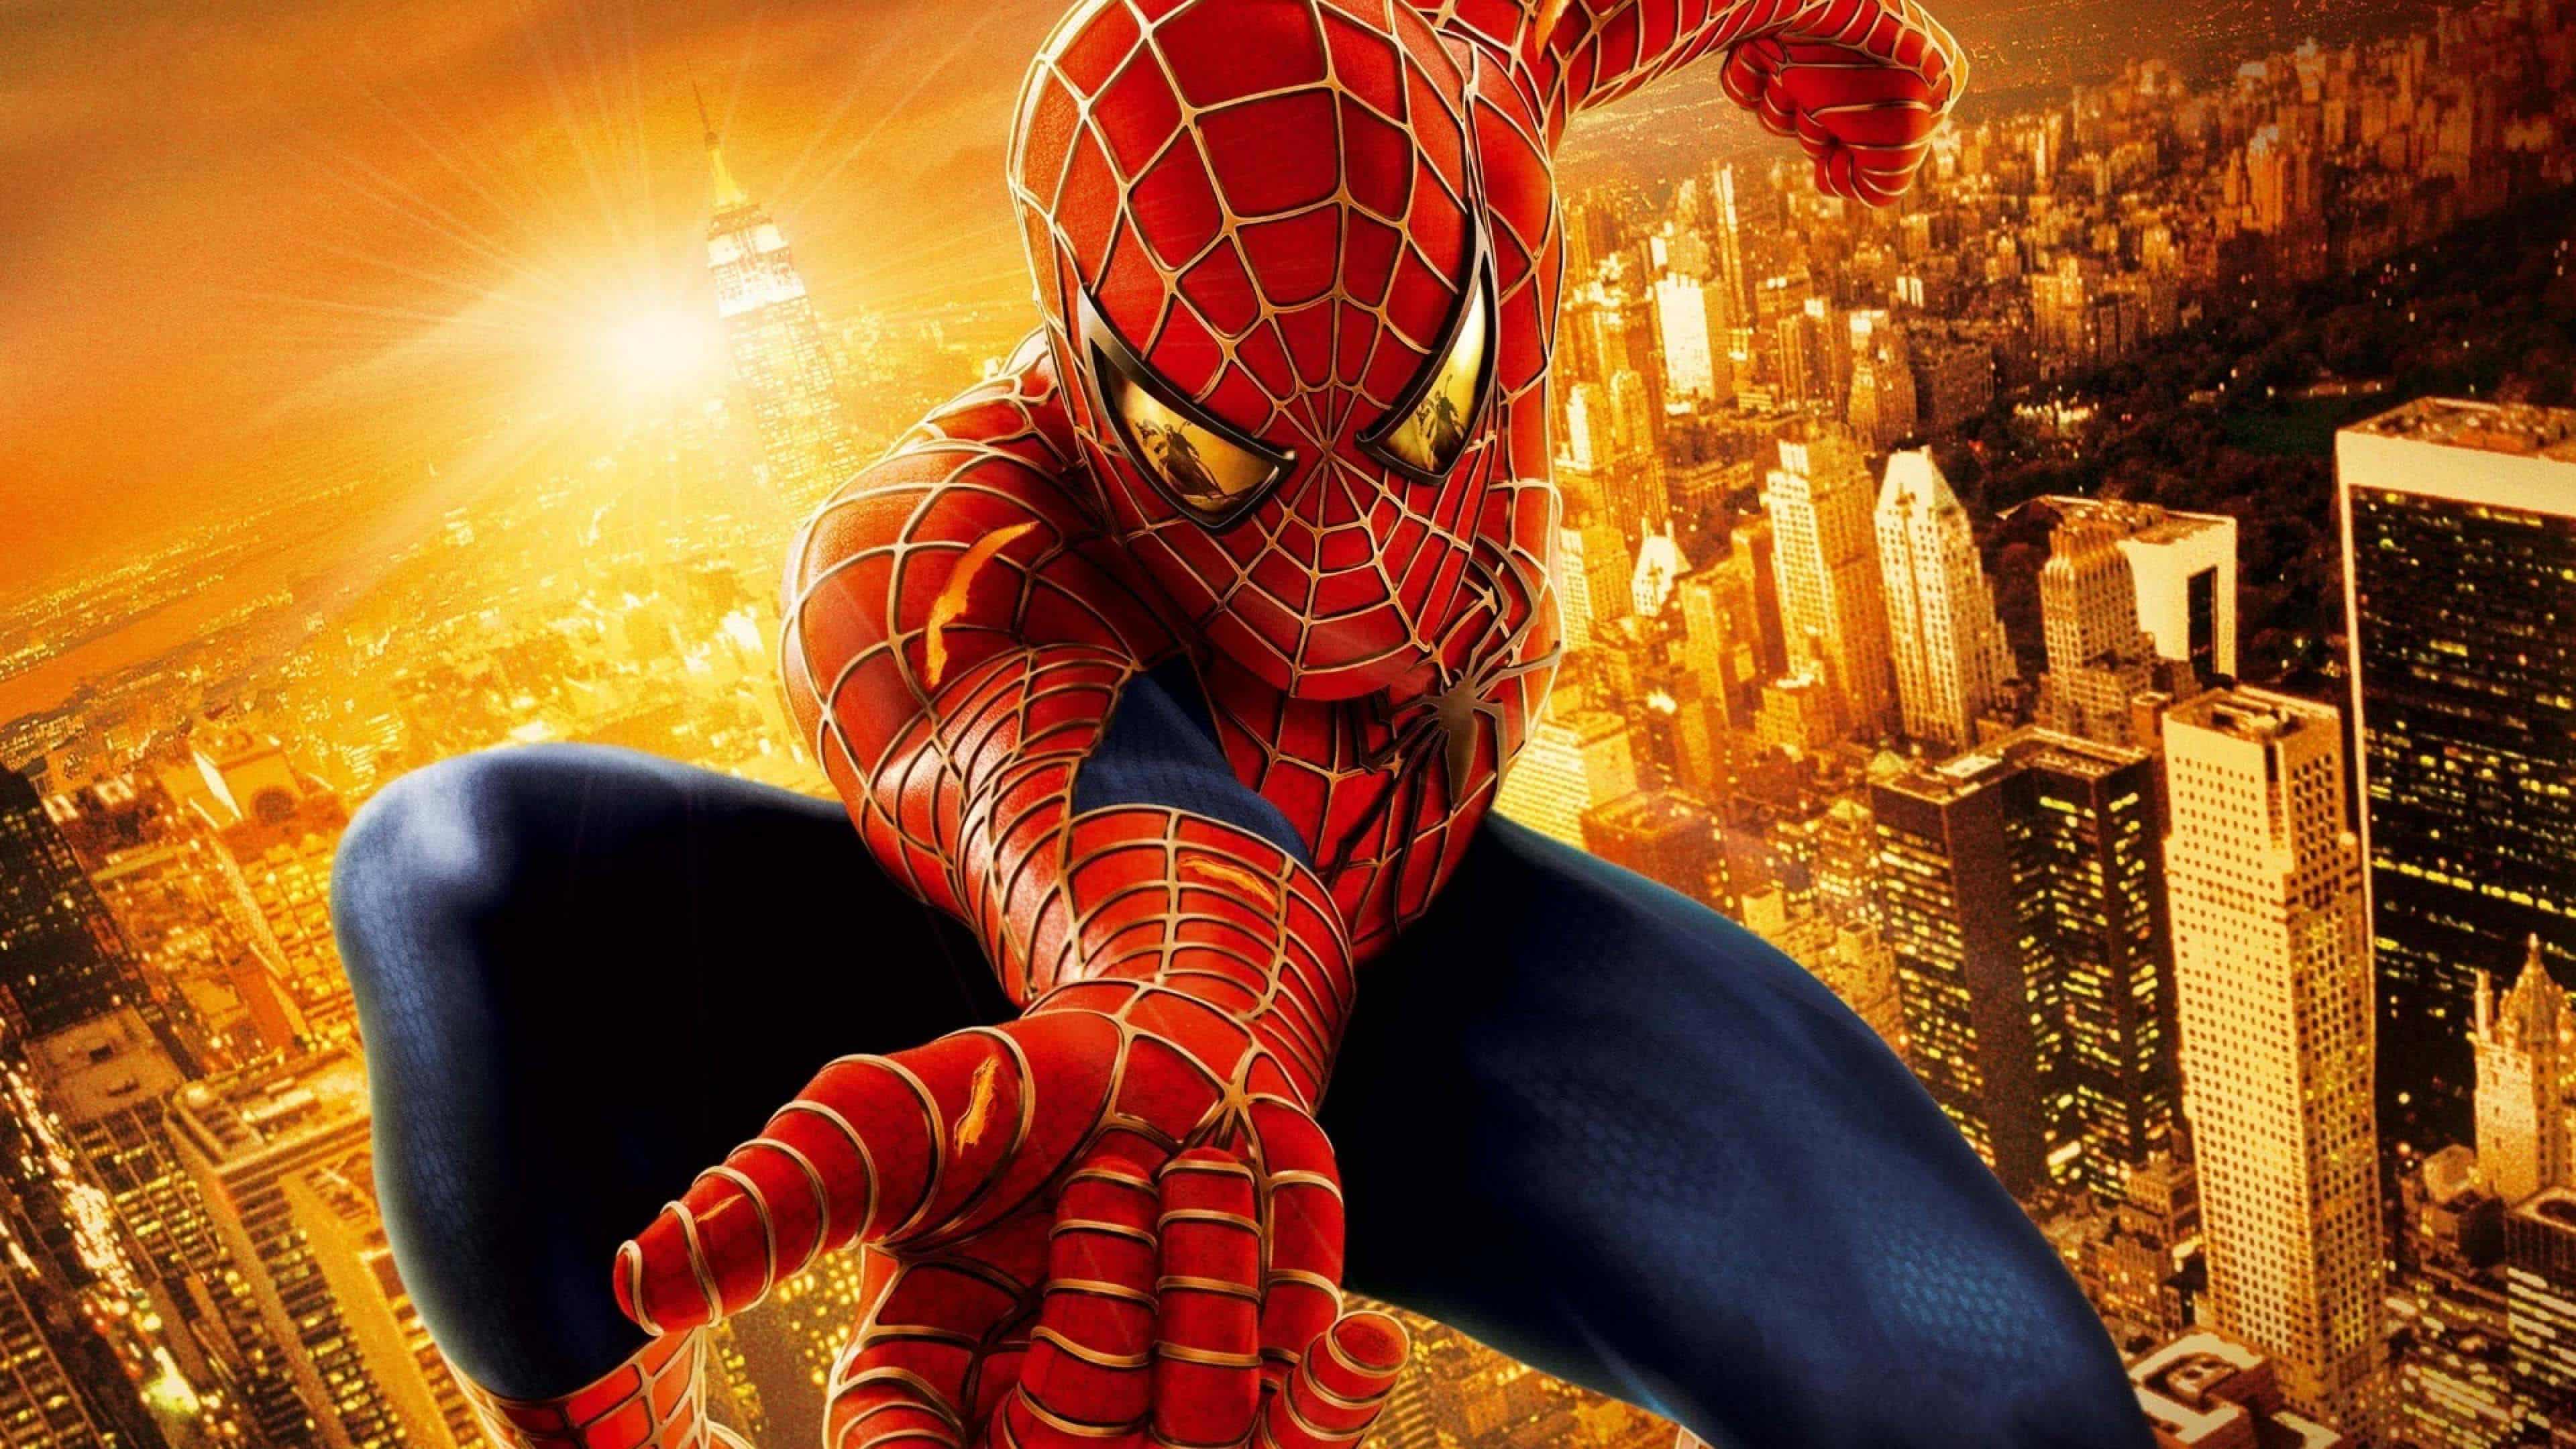 spiderman fondo de pantalla,hombre araña,superhéroe,personaje de ficción,cg artwork